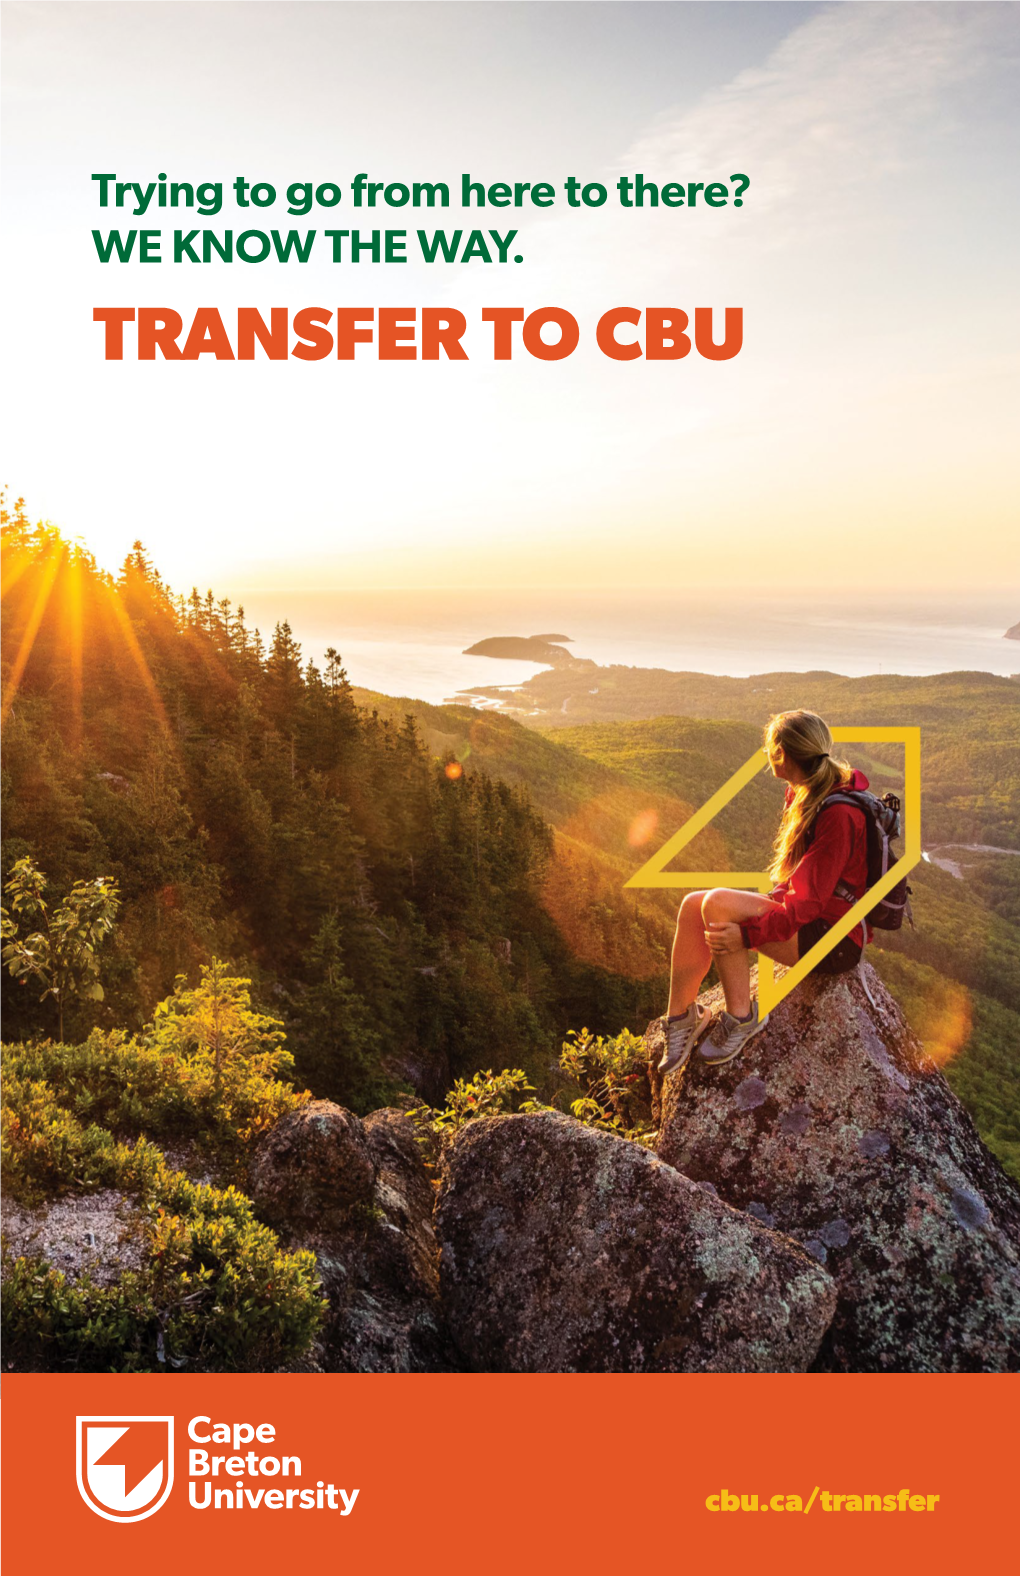 Transfer to Cbu